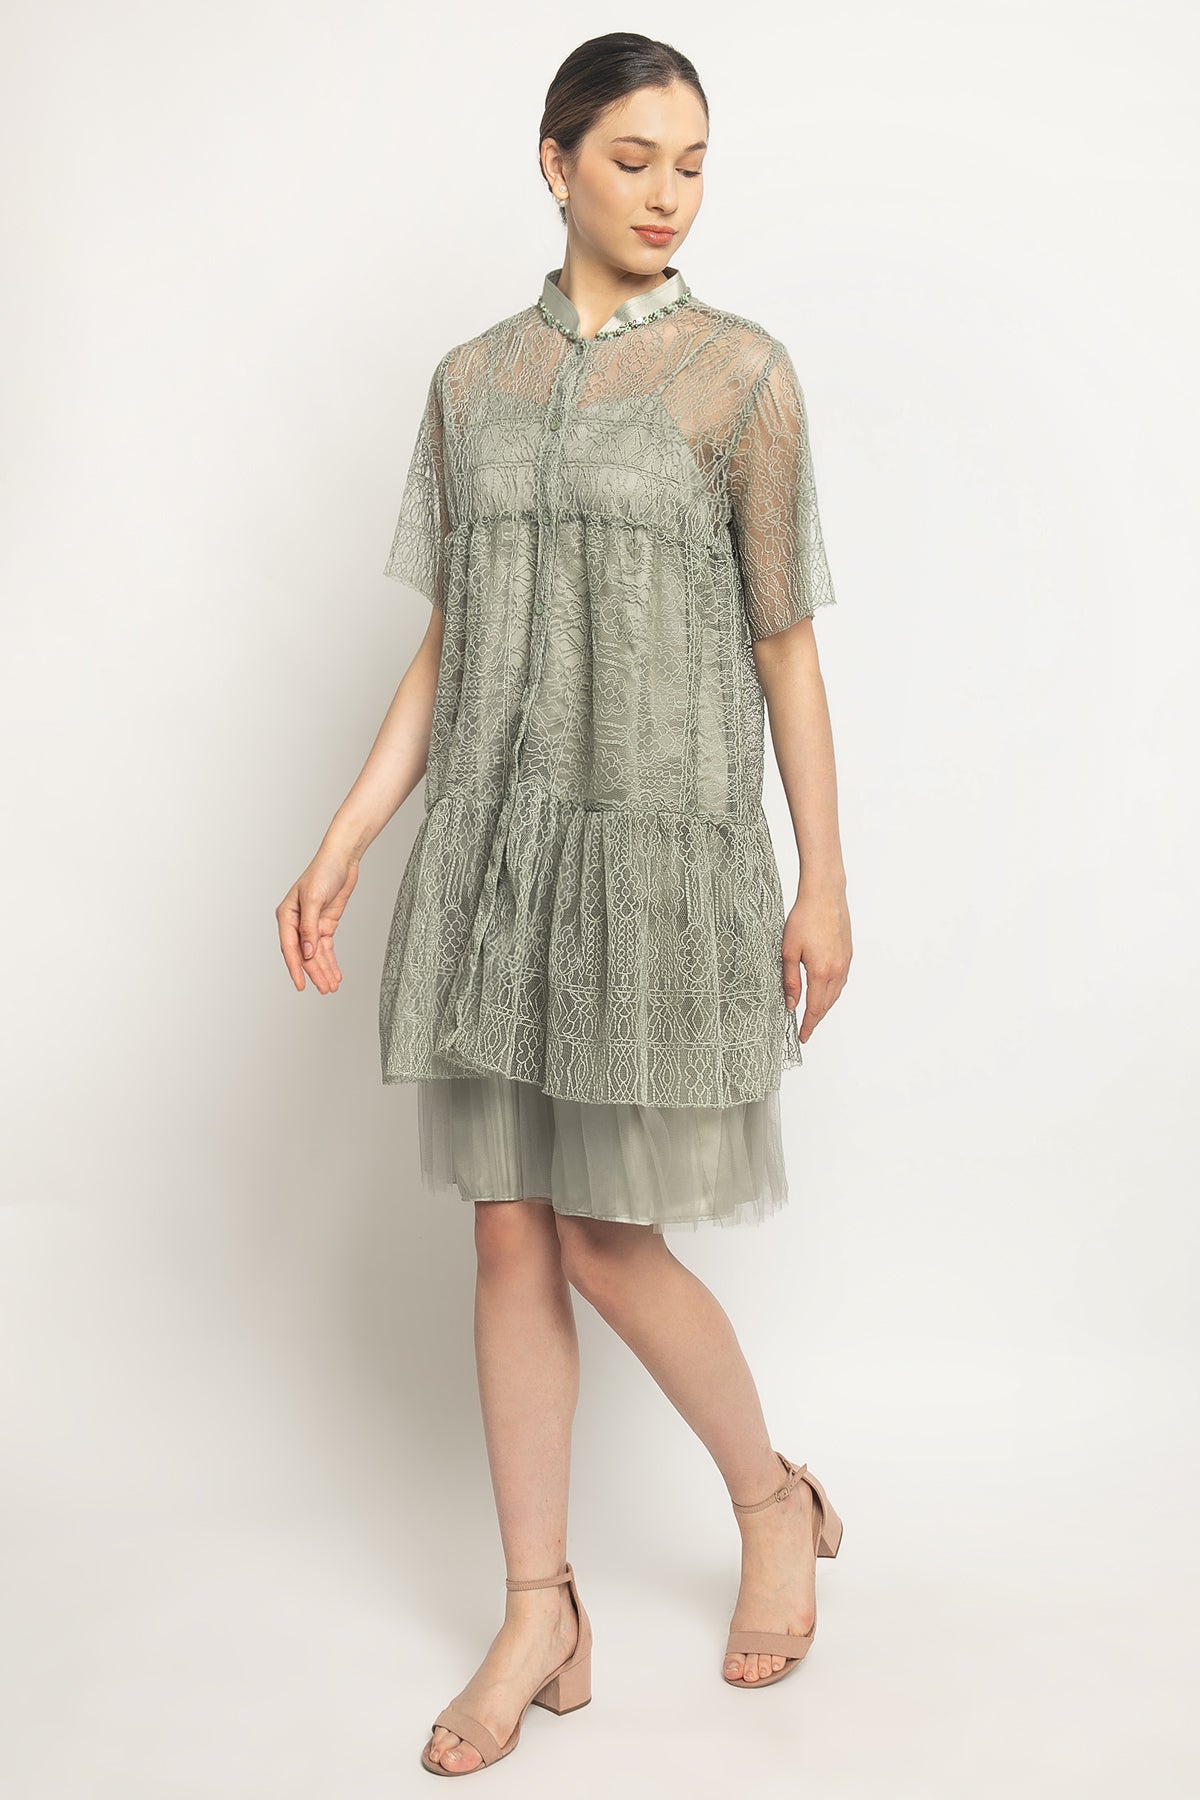 Tiana Dress in Sage Green